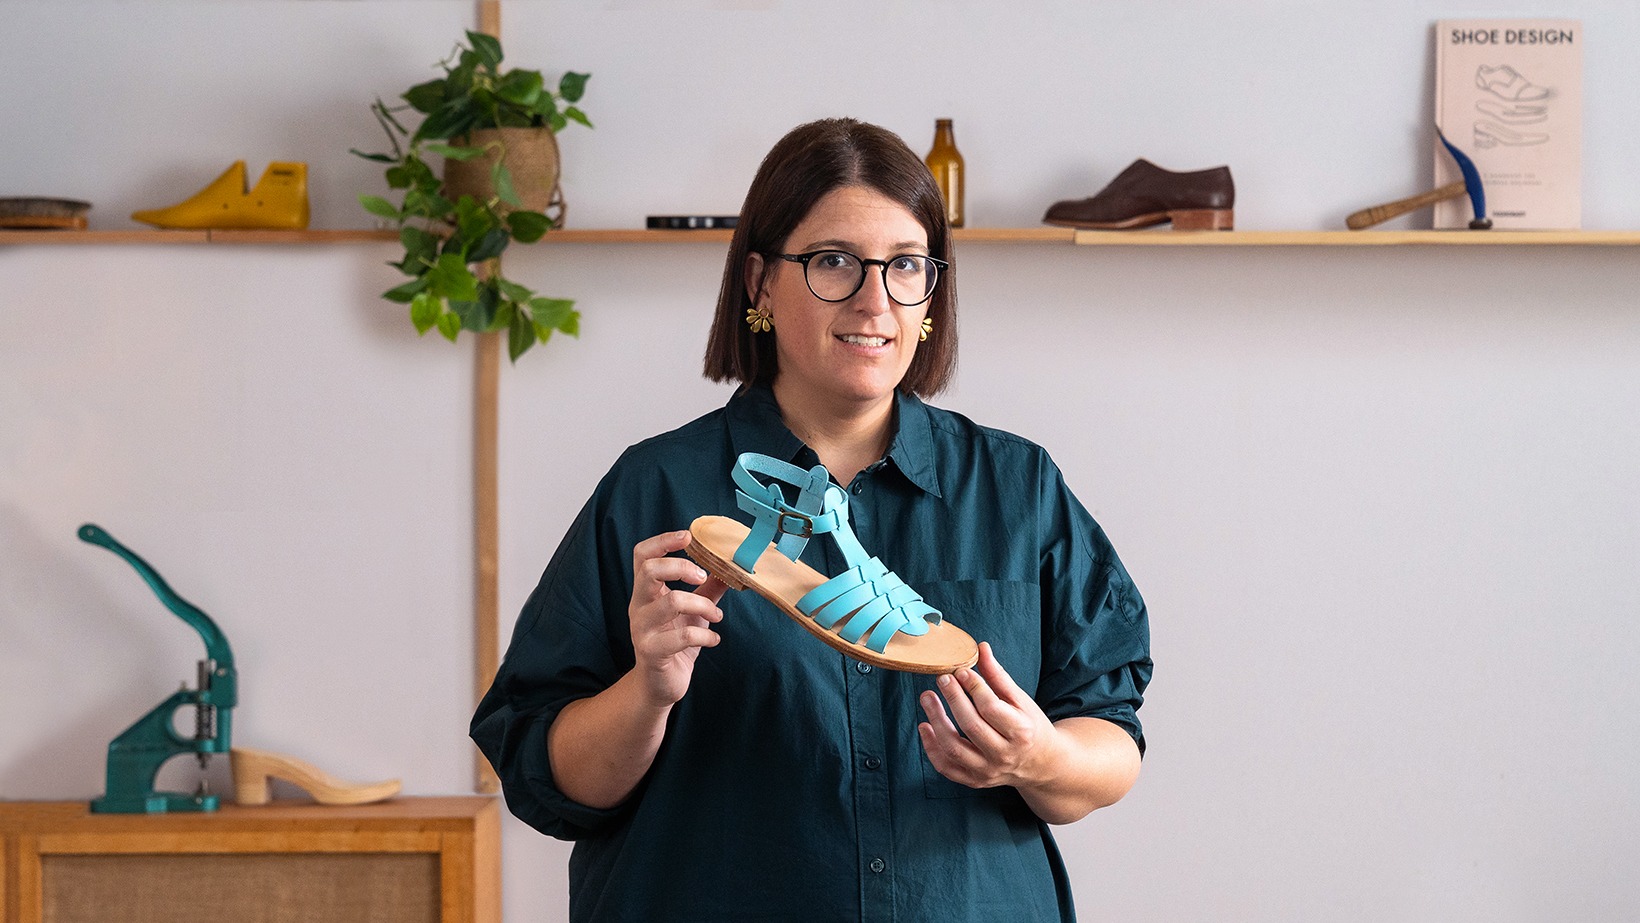 Curso online - Confección artesanal calzado con cuero principiantes (Marta Grau (Lilday)) | Domestika